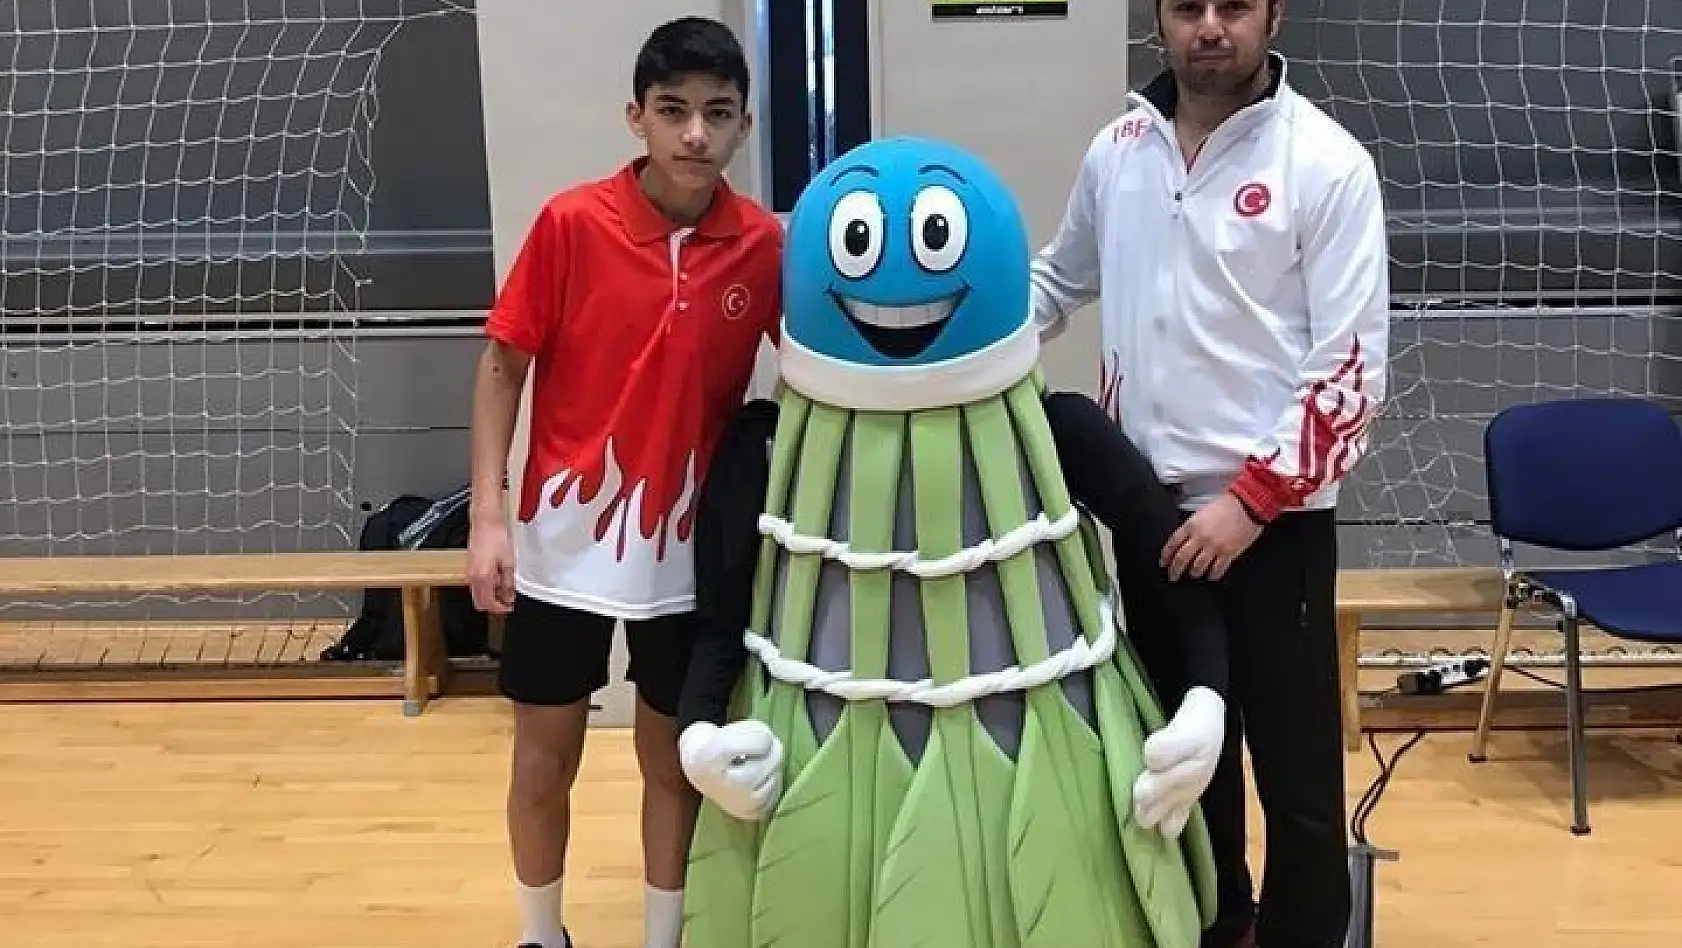 Milli Badmintoncu Hamit Atmaca Türkiye'yi Temsil Edecek
